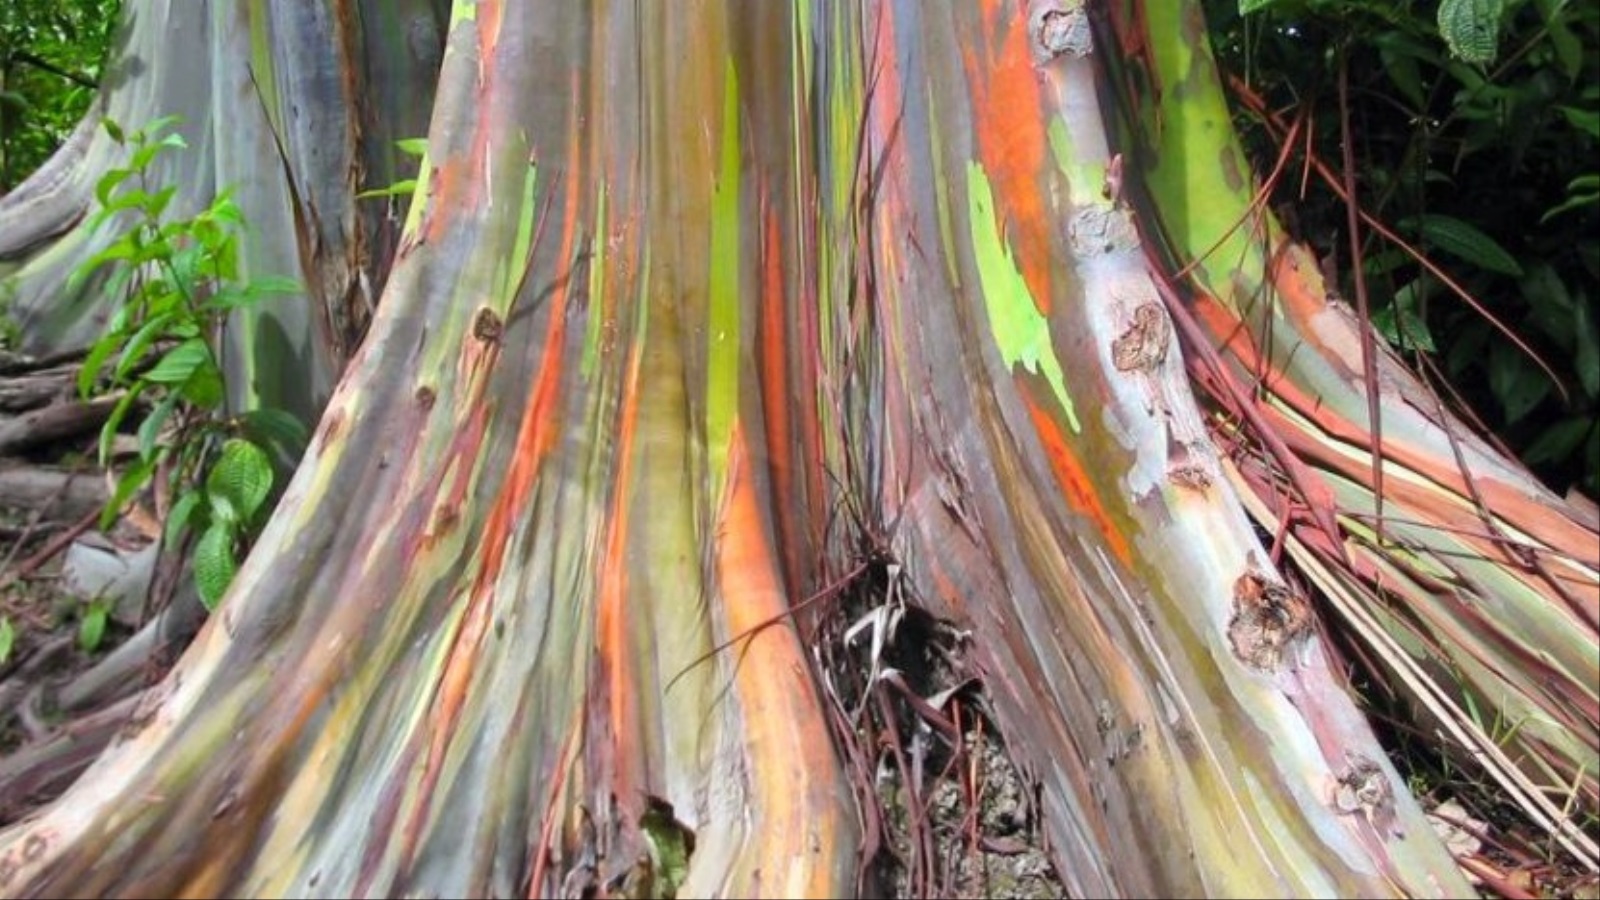 ‪عندما يتم الكشف عن اللحاء الداخلي الأخضر للشجرة تنضج هذه الطبقة ببطء وتتحول لمجموعة من الألوان‬ عندما يتم الكشف عن اللحاء الداخلي الأخضر للشجرة تنضج هذه الطبقة ببطء وتتحول لمجموعة من الألوان (ويكيميديا)